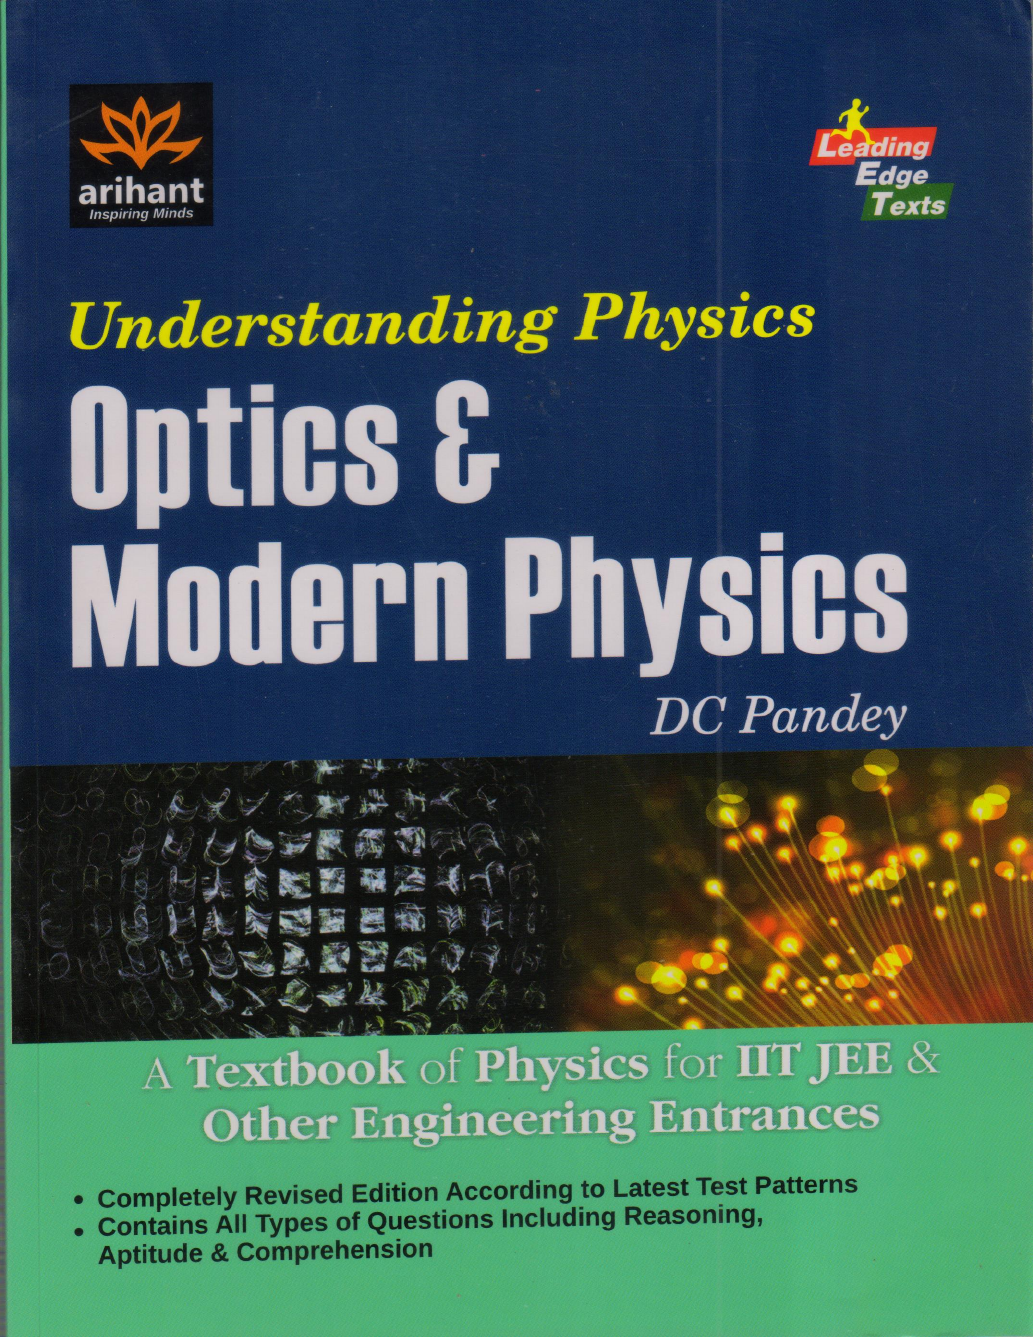 Dc pandey physics pdf download